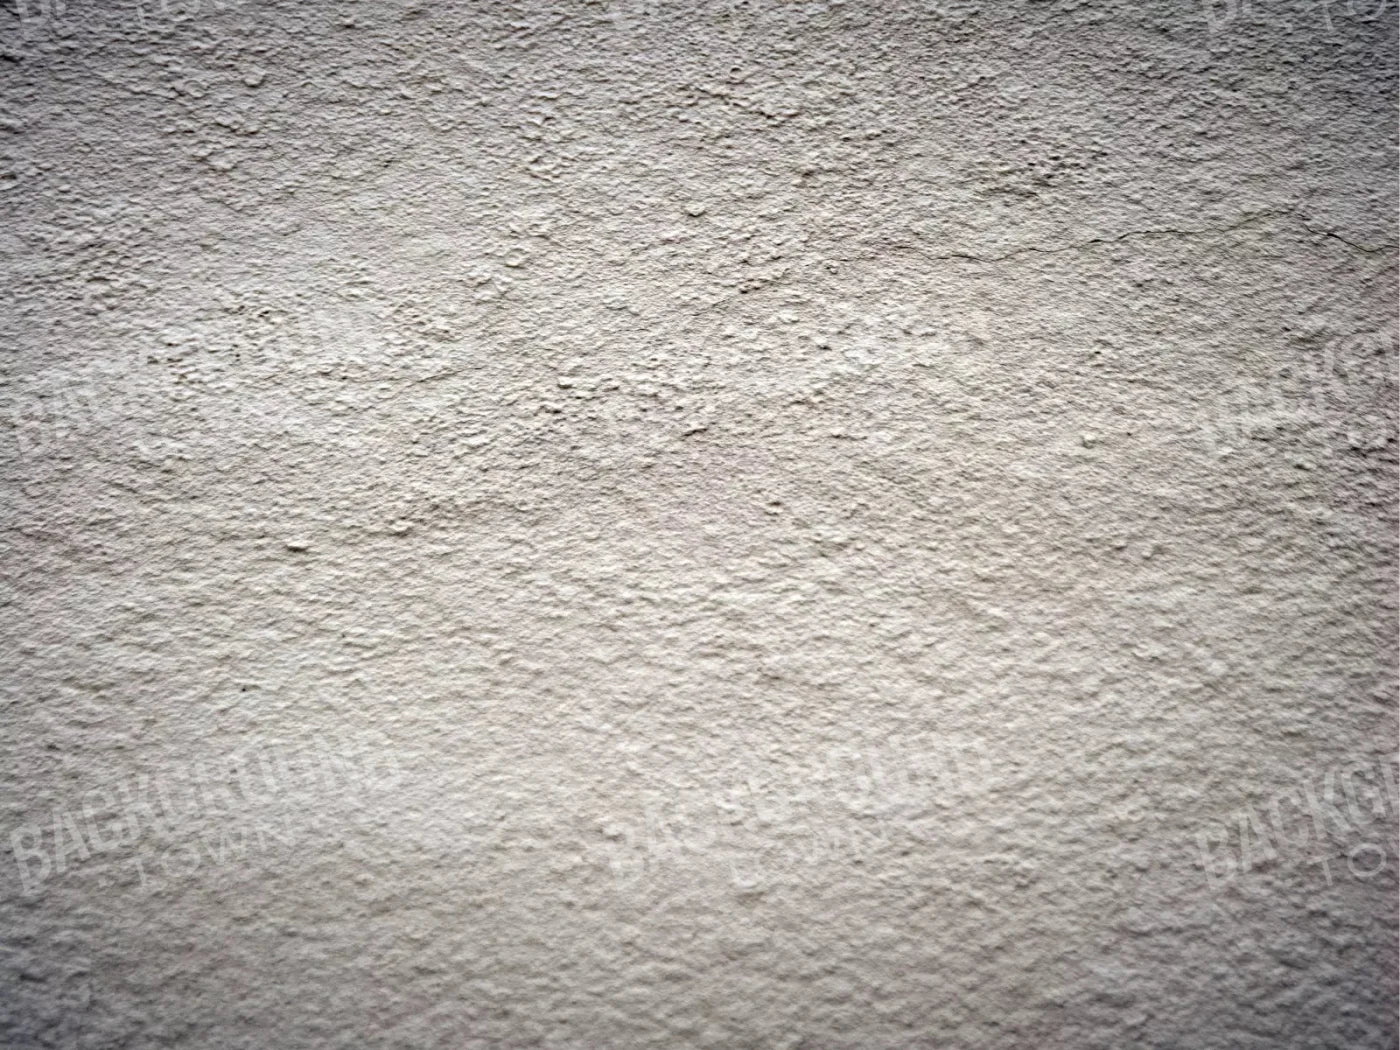 Concrete Jungles 7X5 Ultracloth ( 84 X 60 Inch ) Backdrop